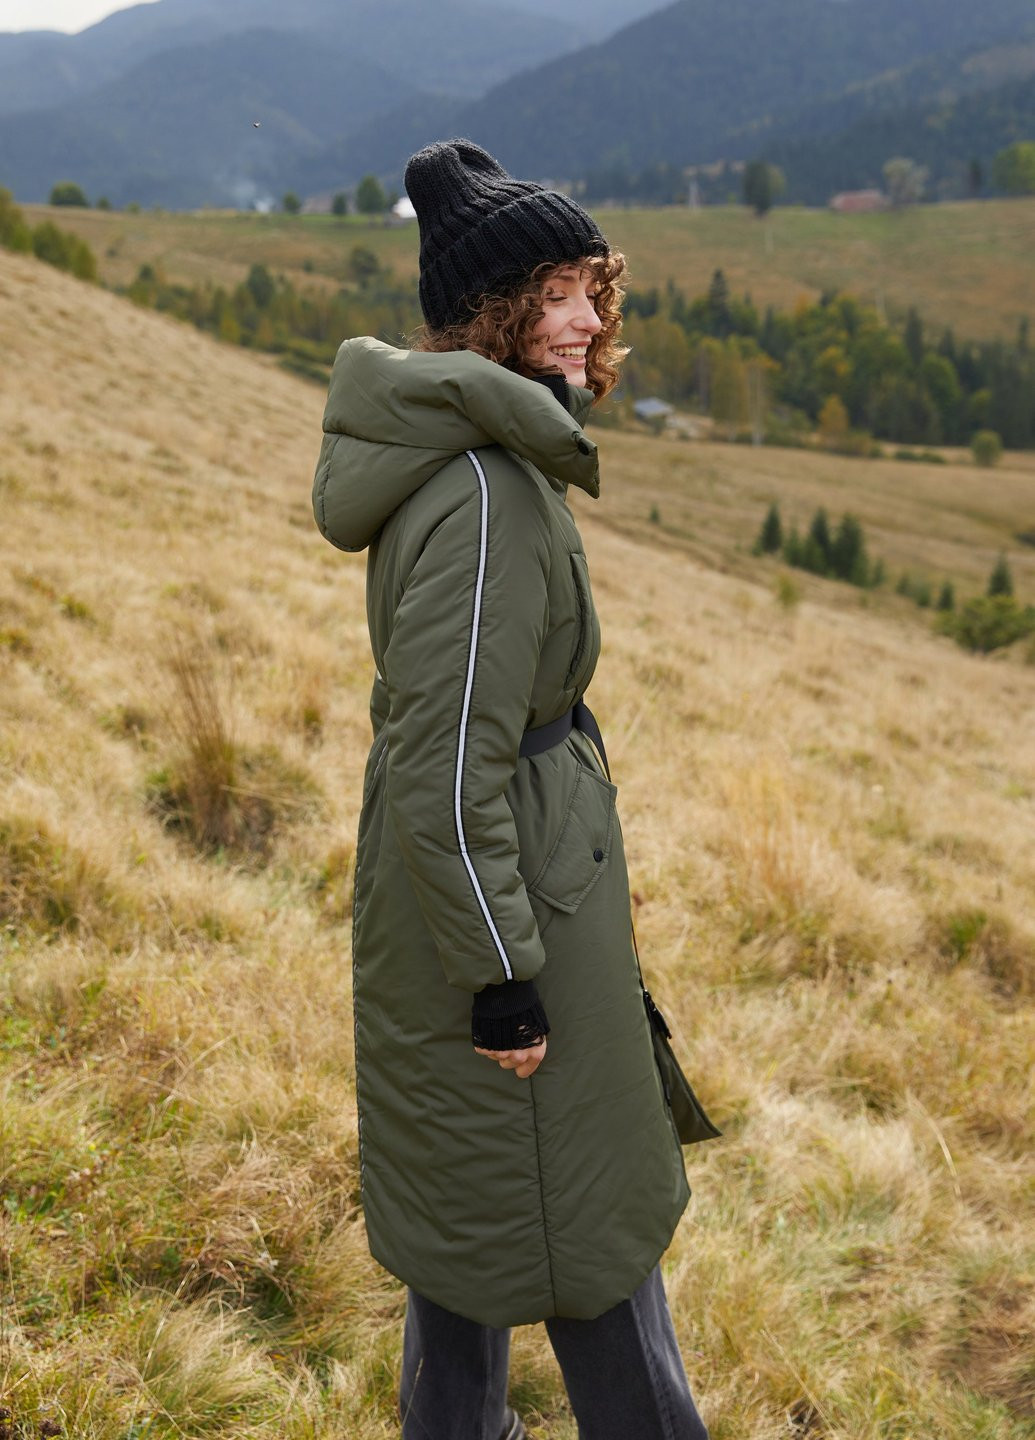 Оливкова (хакі) зимня куртка Gepur